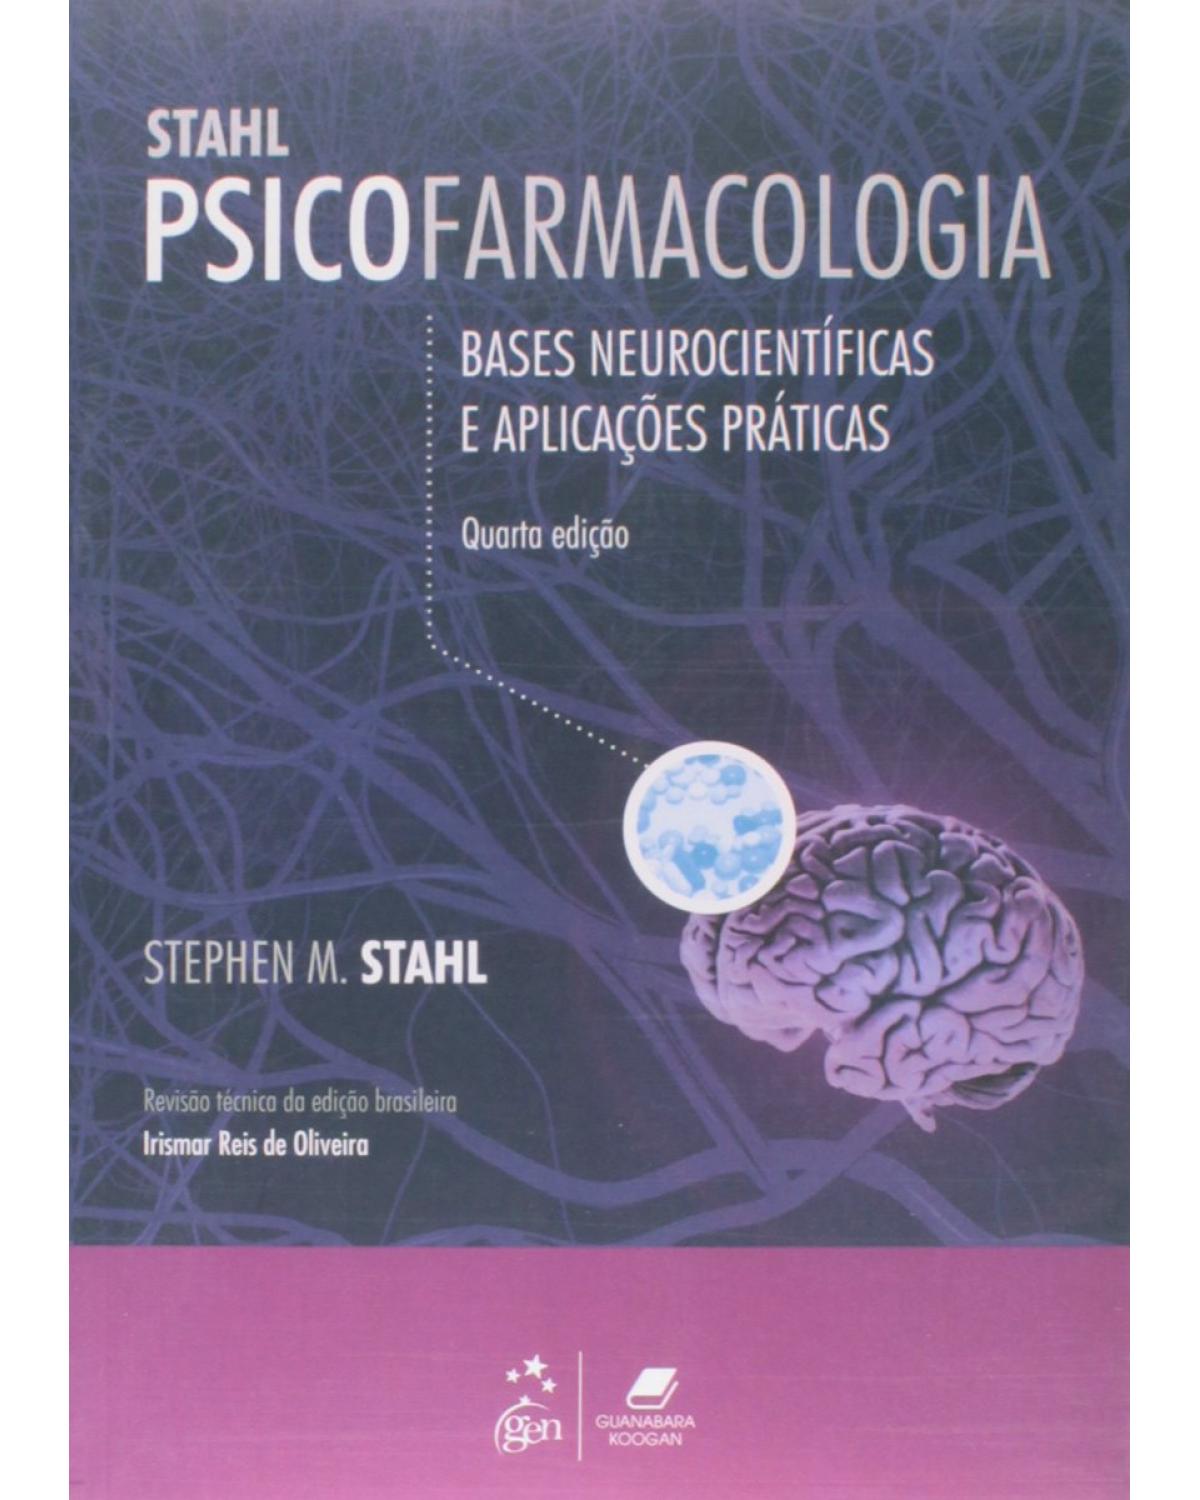 Stahl - Psicofarmacologia - Bases neurocientíficas e aplicações práticas - 4ª Edição | 2014